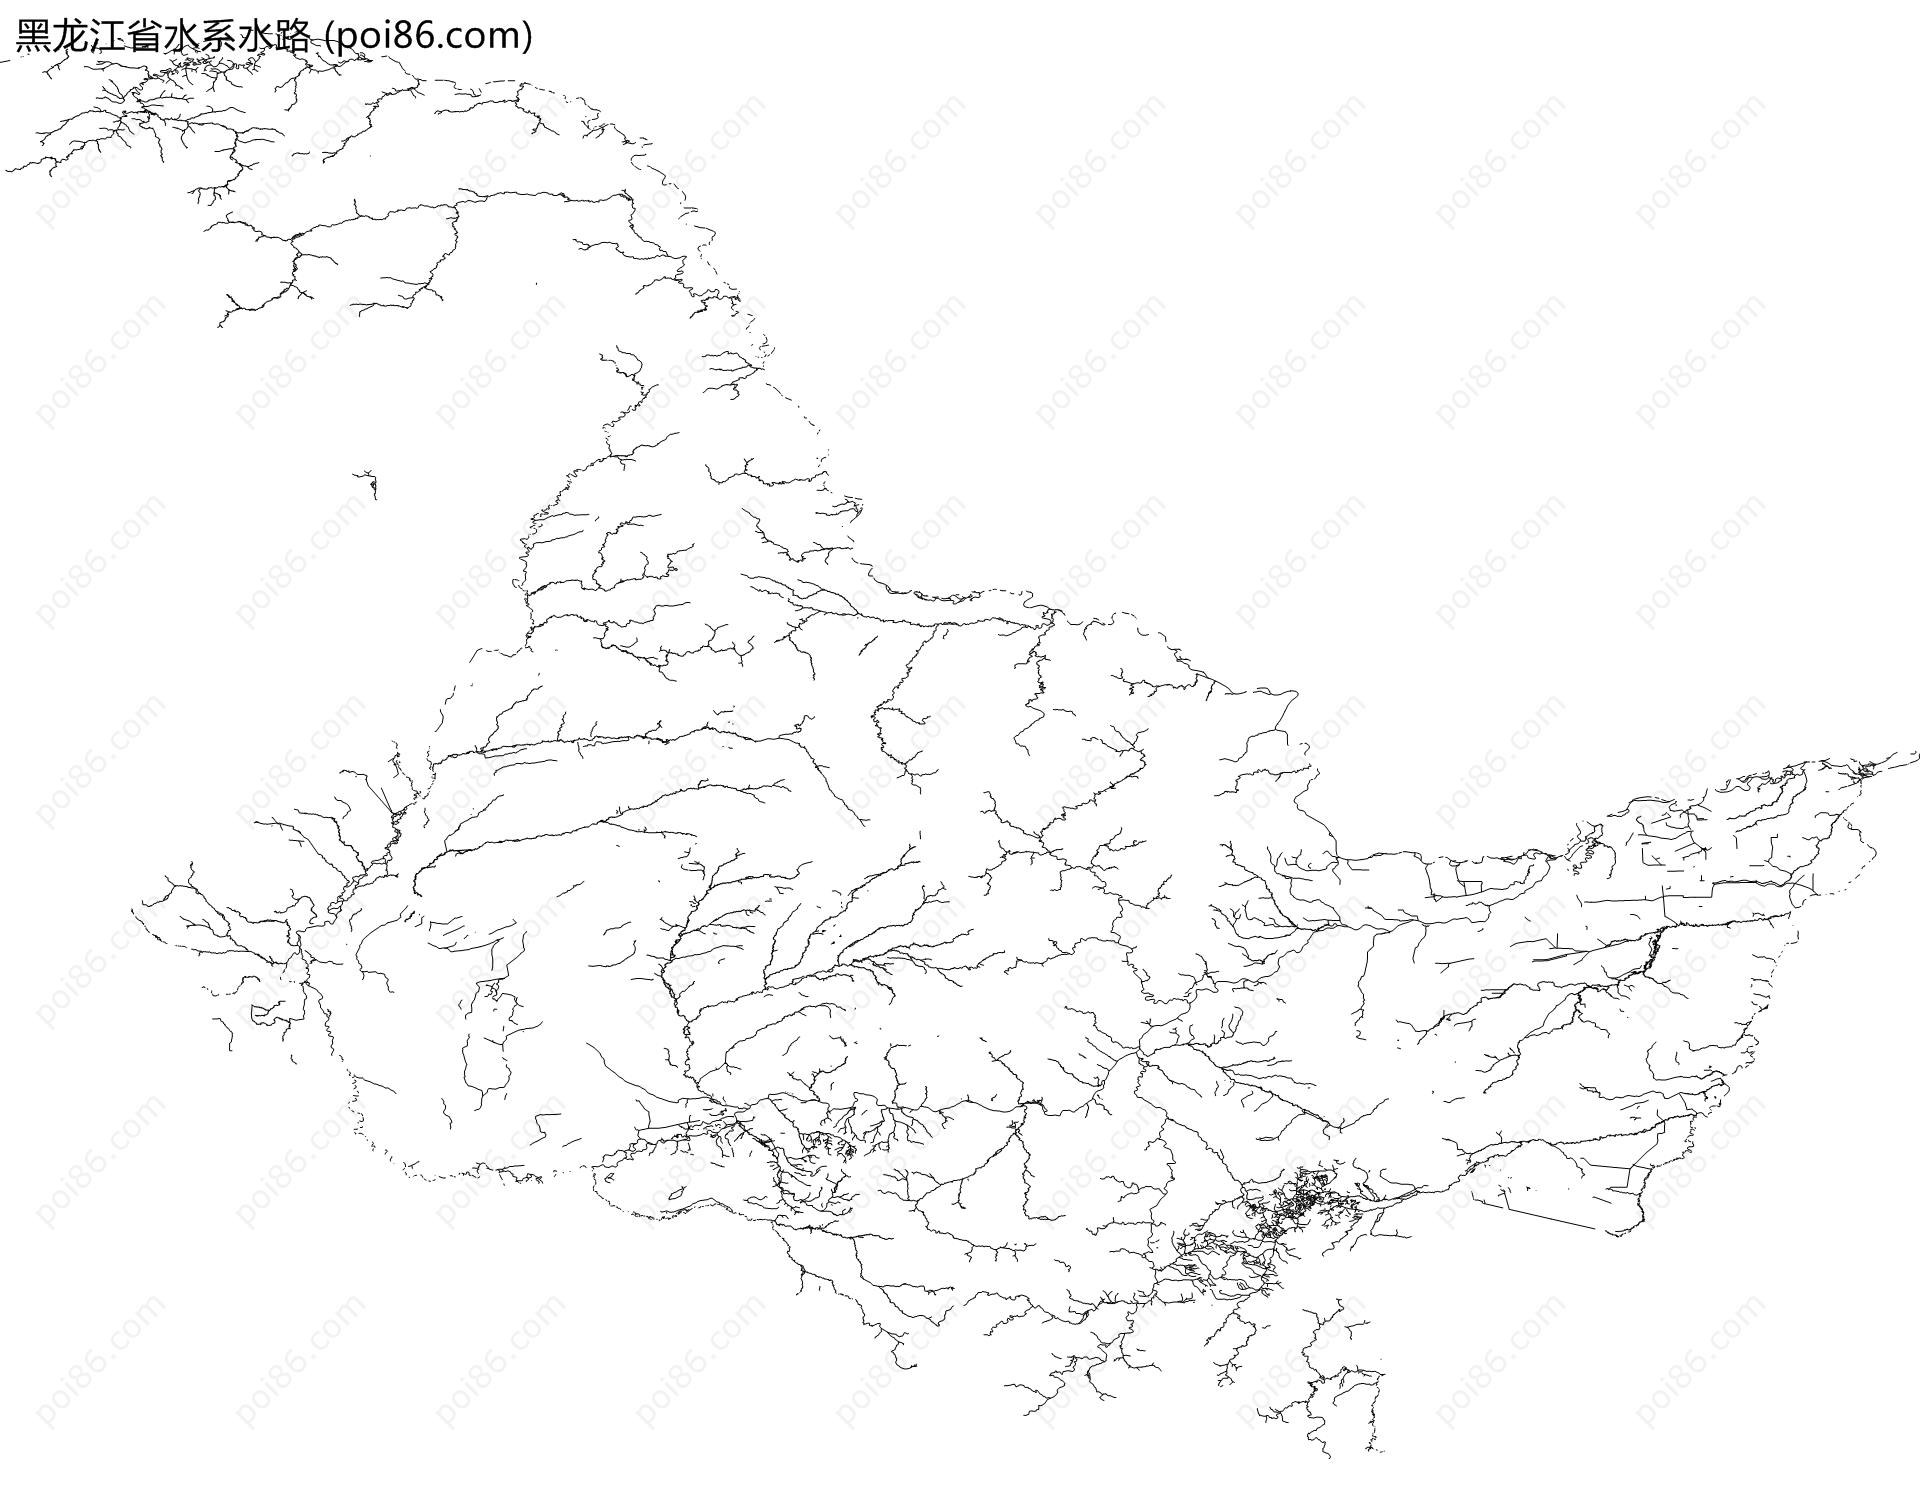 黑龙江省水系水路地图